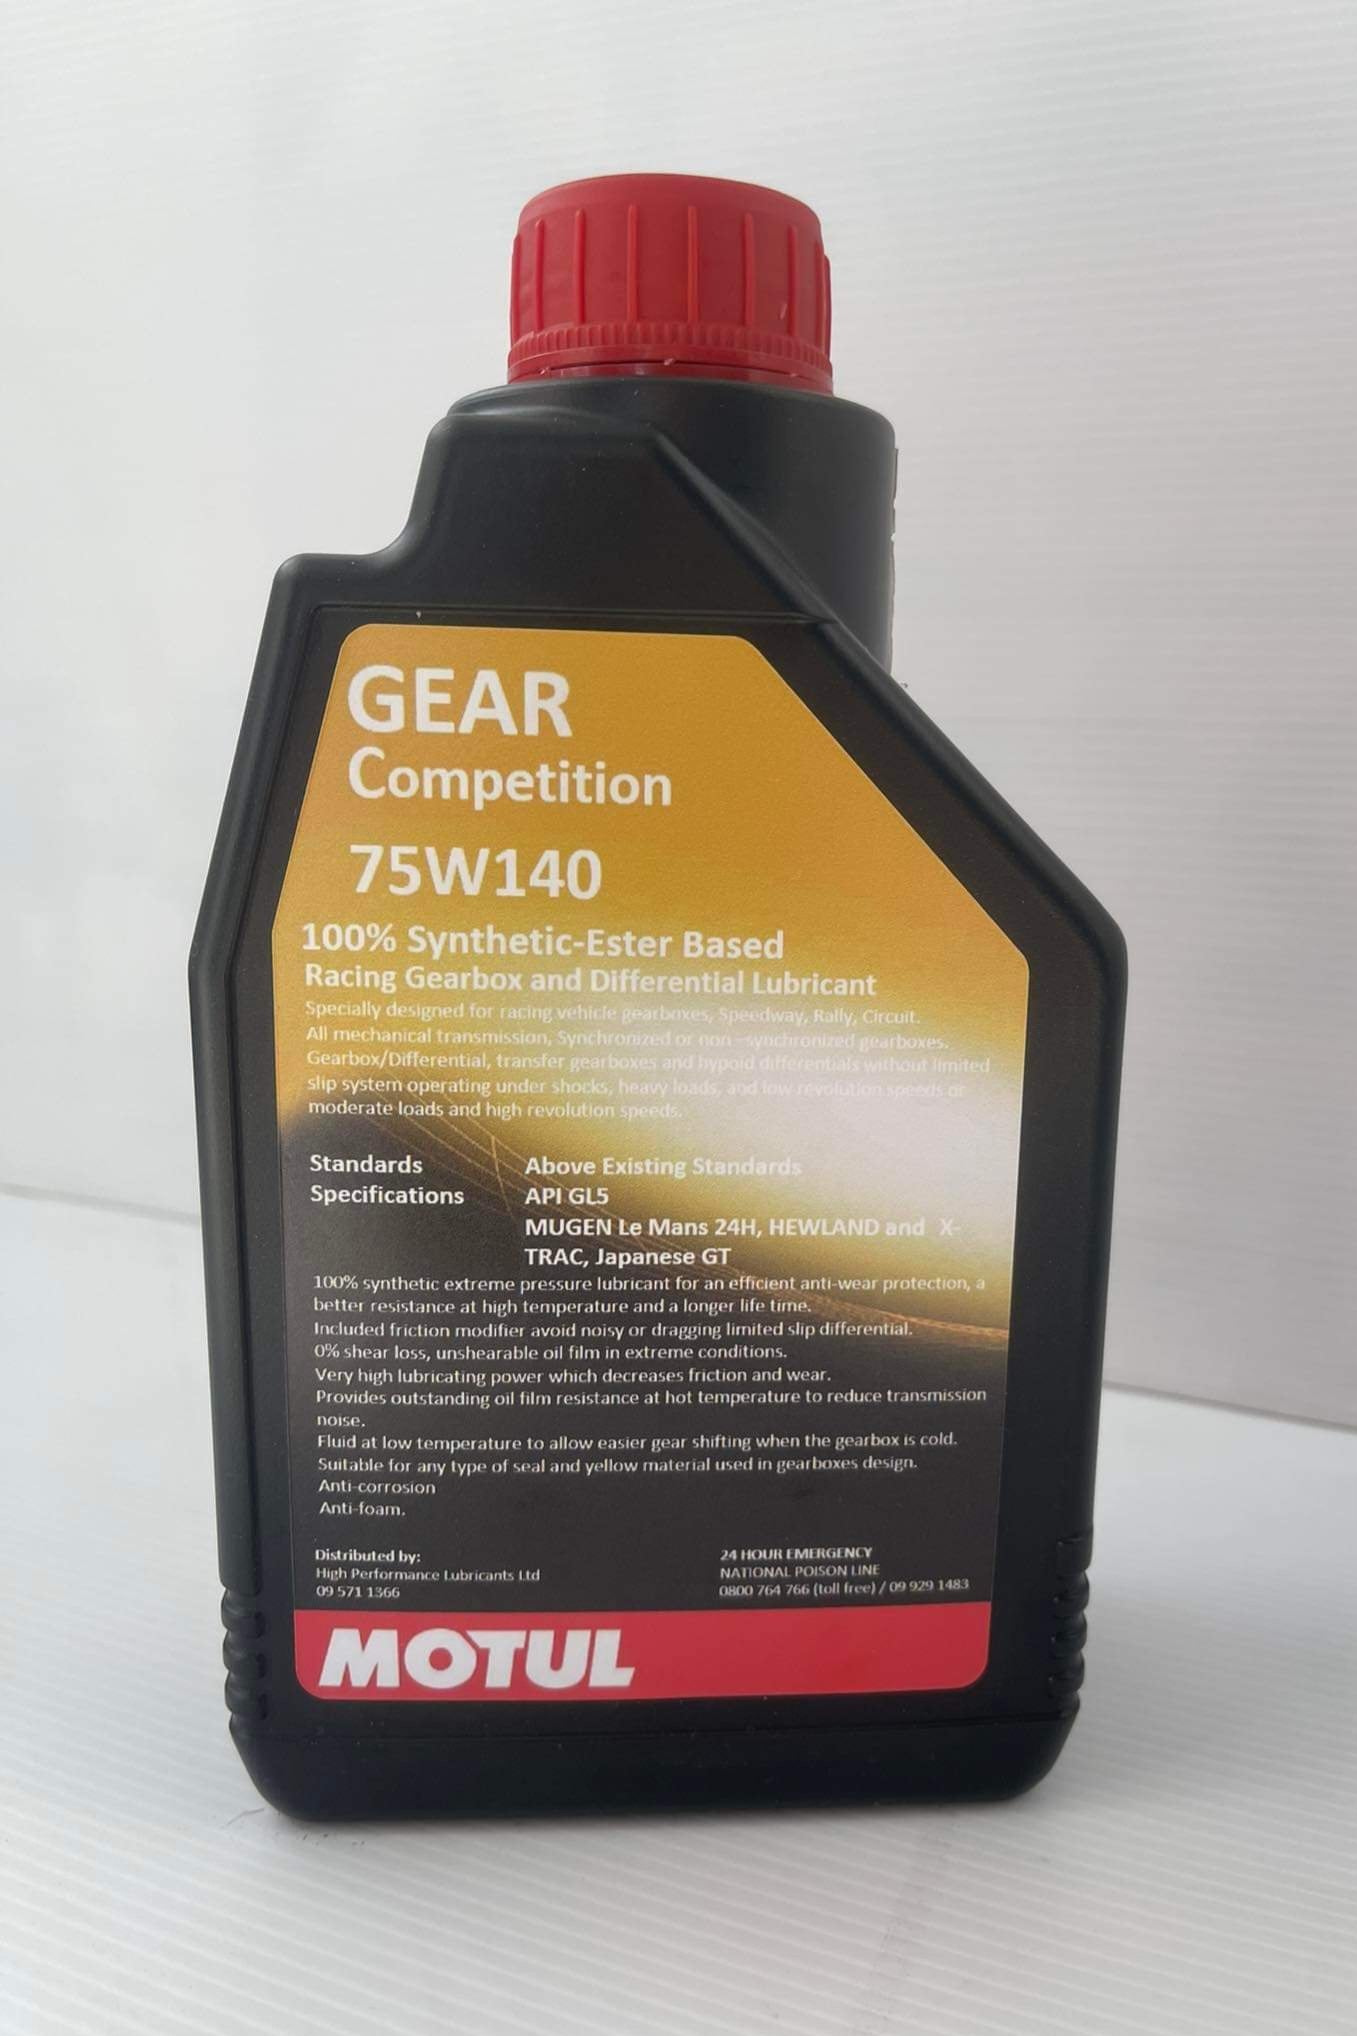 1 Litre Bottle of Motul Competition 75W140 Gear Oil